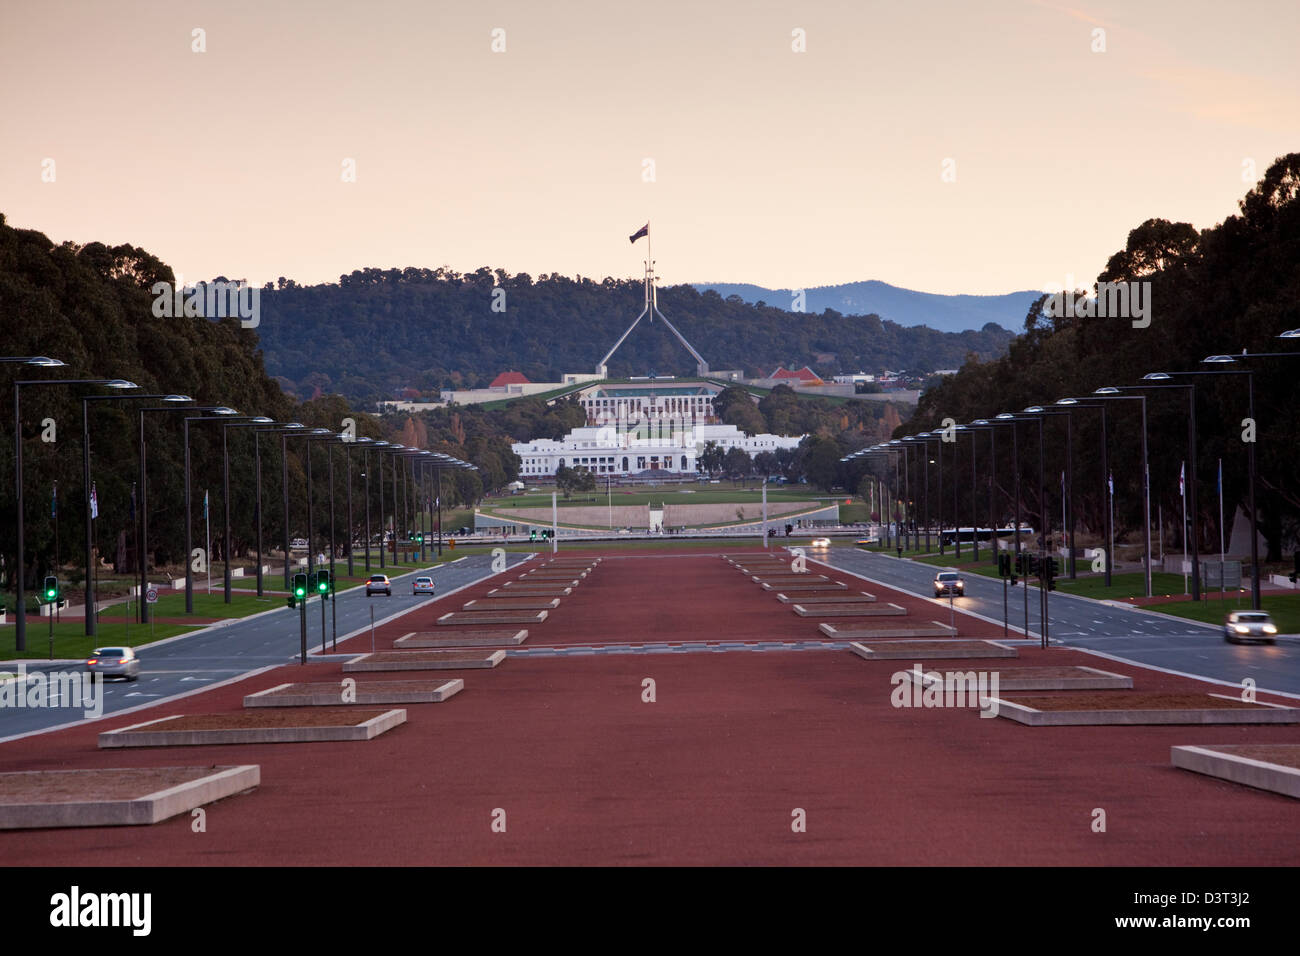 Anzac Parade à vue le long de la Maison du Parlement au crépuscule. Canberra, Territoire de la capitale australienne (ACT), l'Australie Banque D'Images